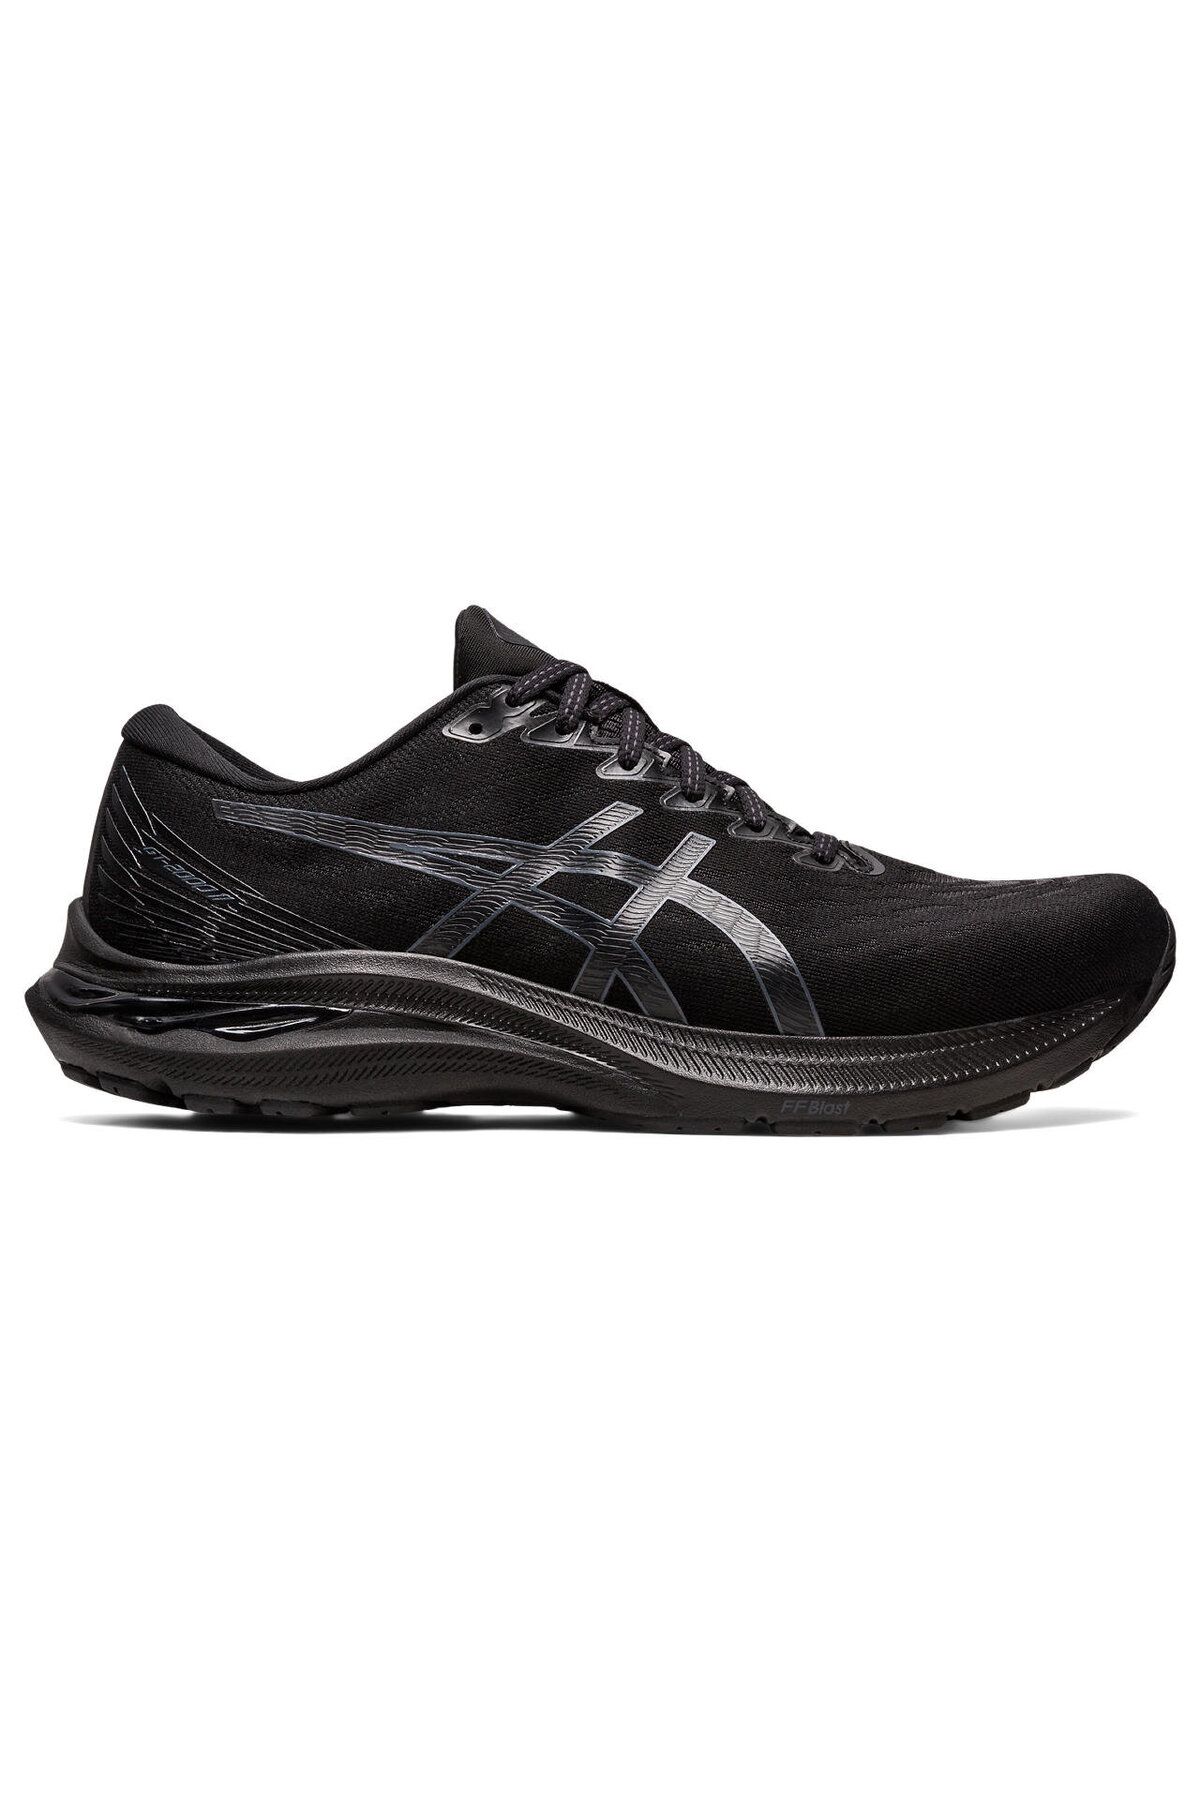 Asics Gt-2000 11 Erkek Siyah Koşu Ayakkabısı 1011b441-005